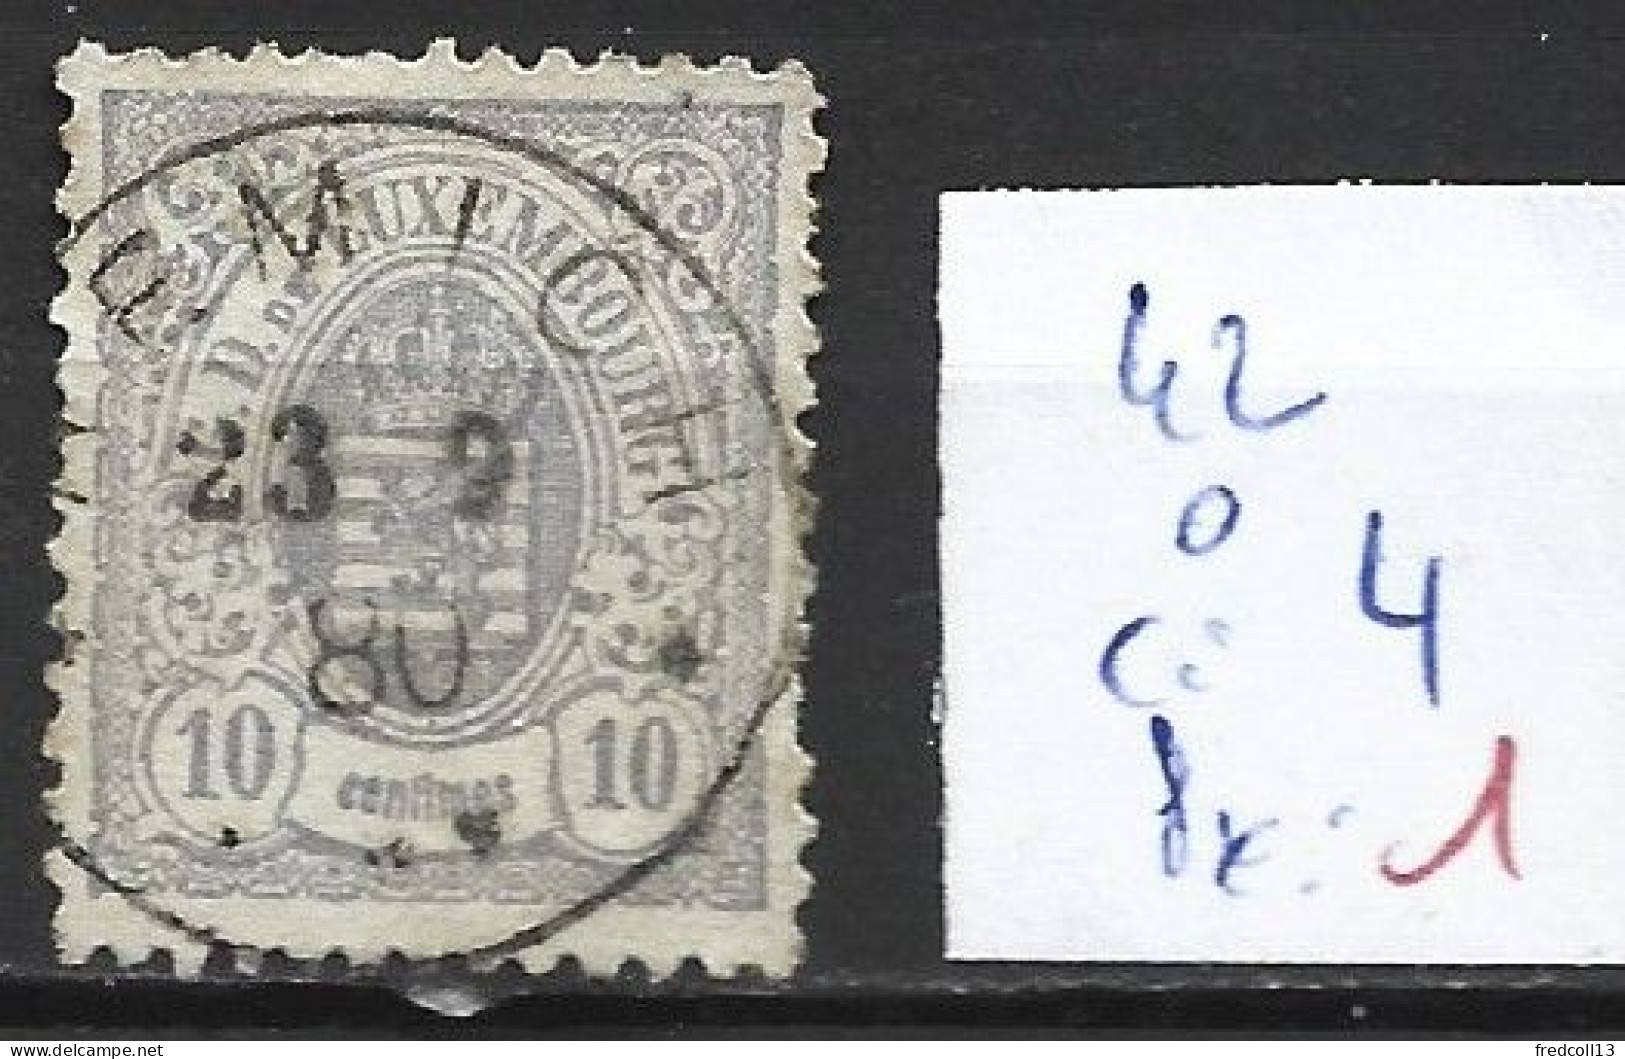 LUXEMBOURG 42 Oblitéré Côte 4 € - 1859-1880 Wapenschild